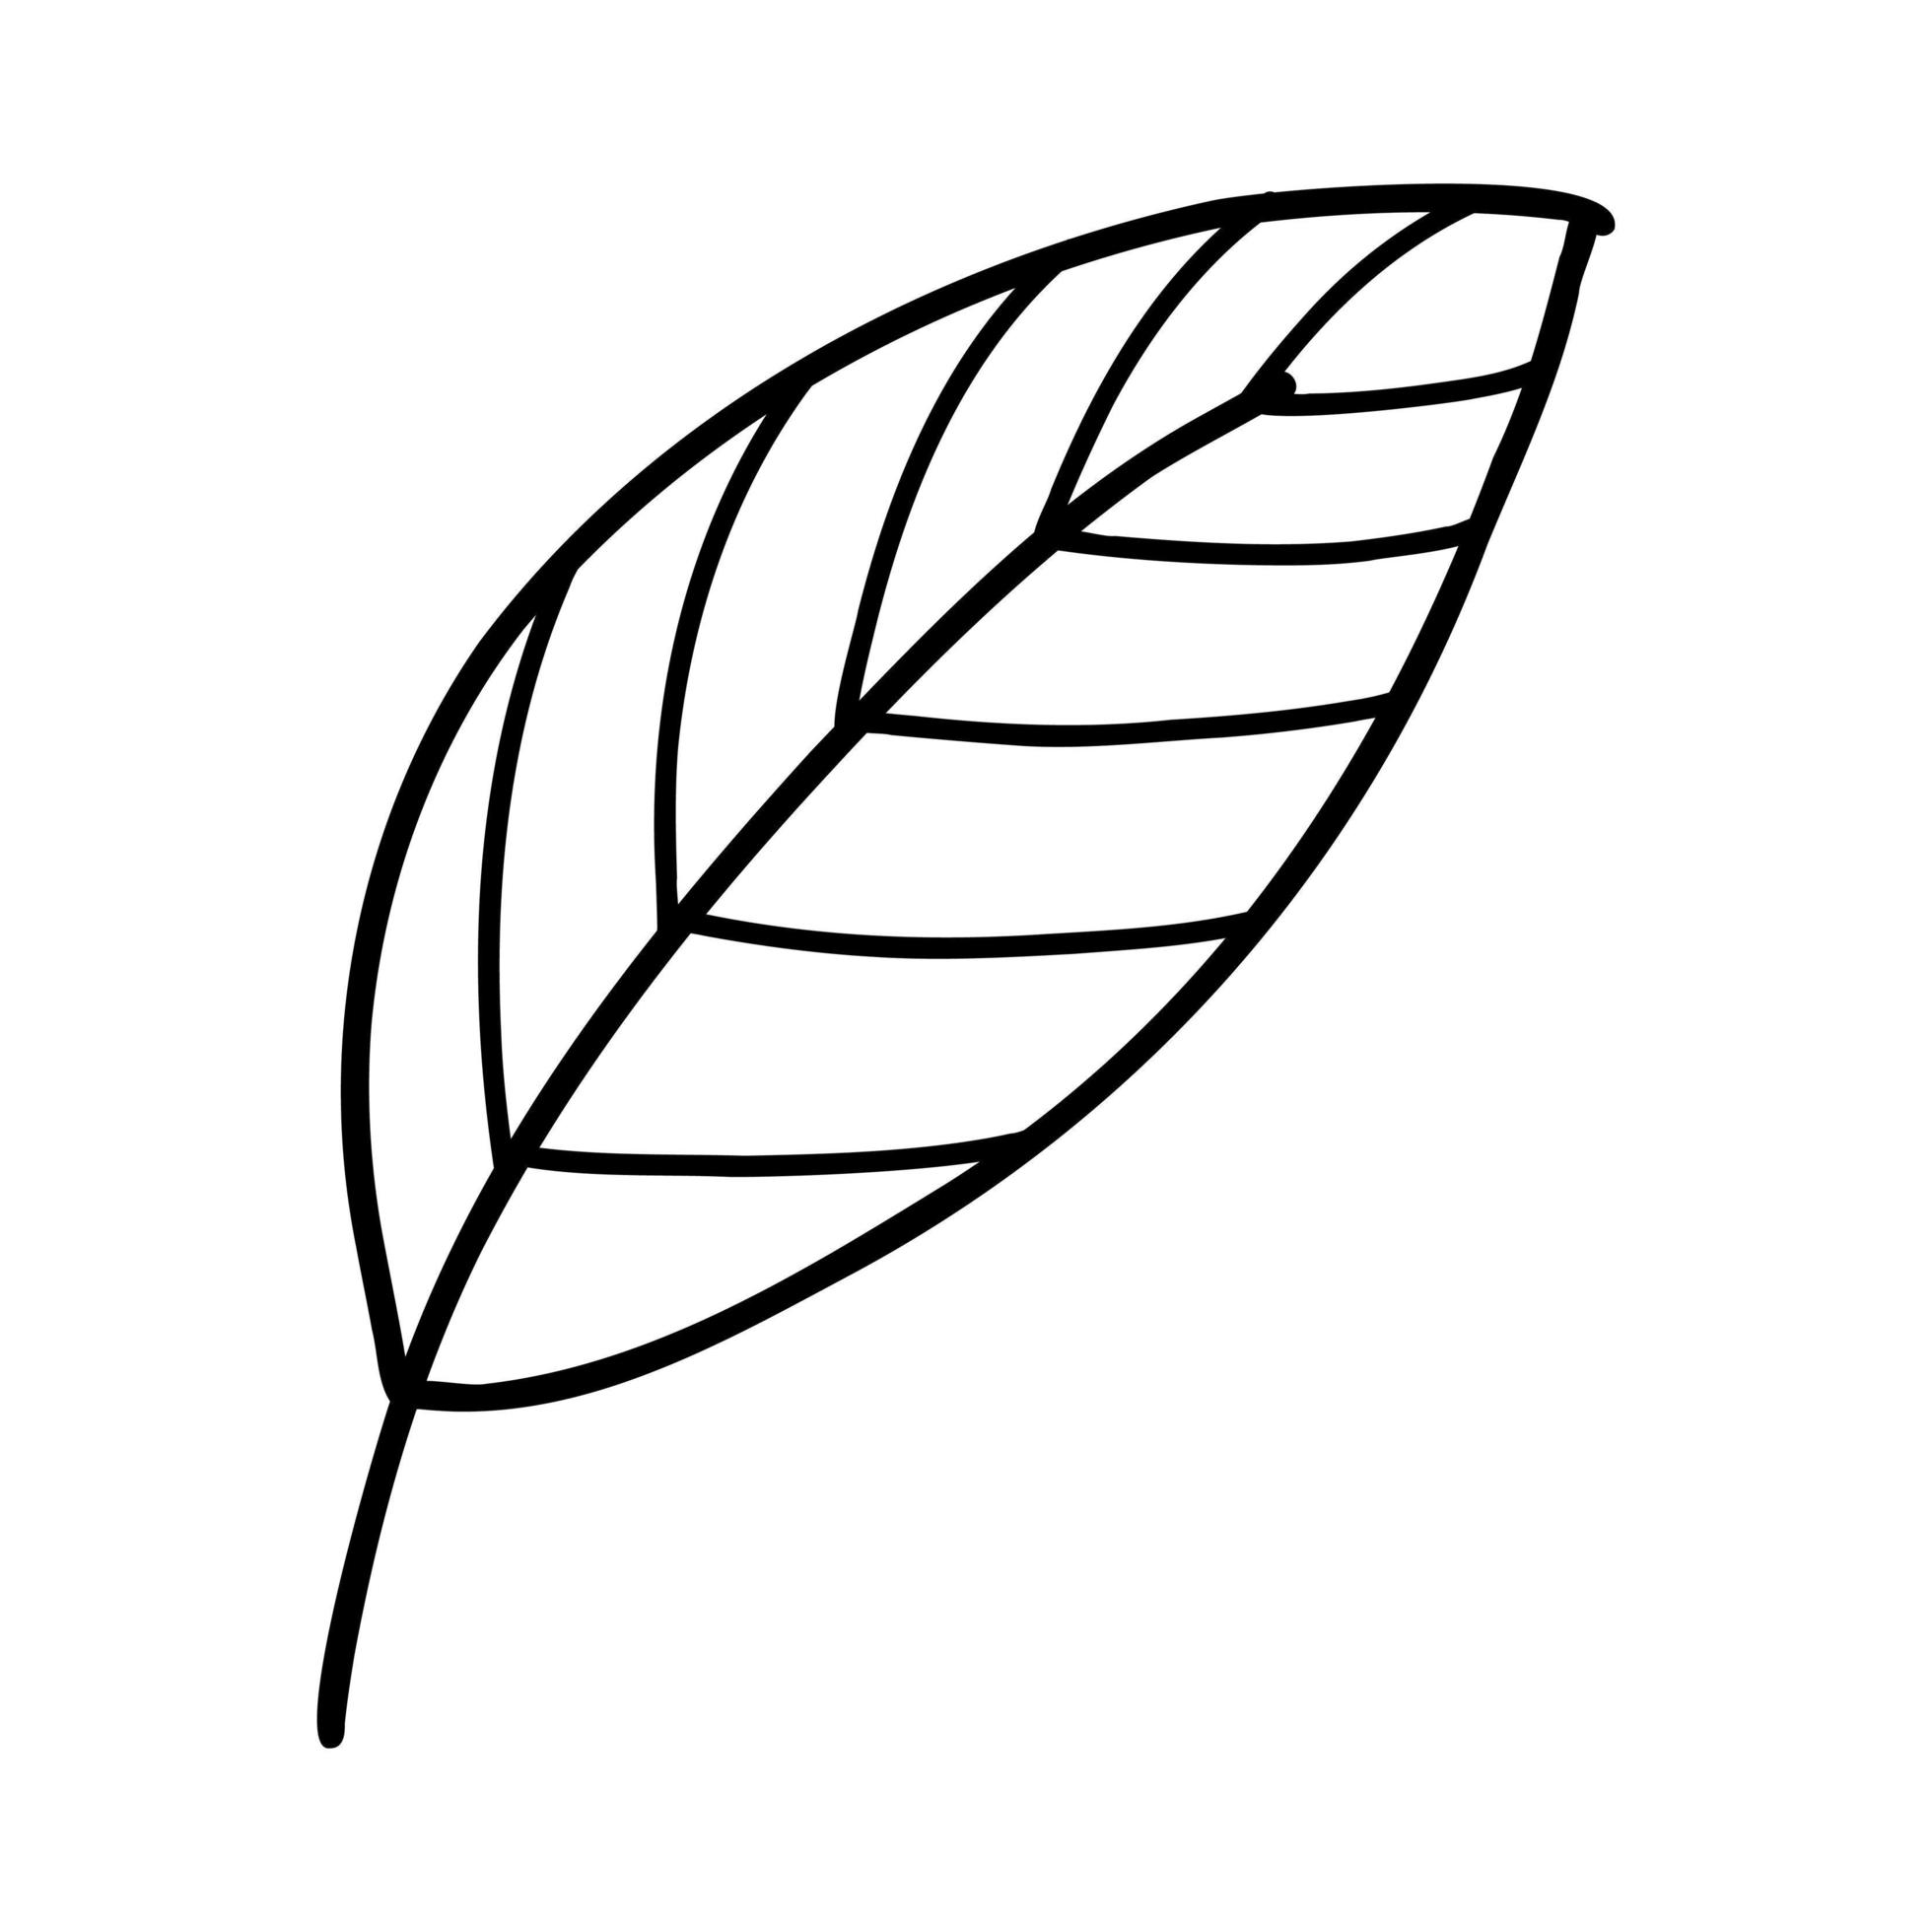 Doodle line leaf. Vector illustration of linear leaves 5506152 Vector ...